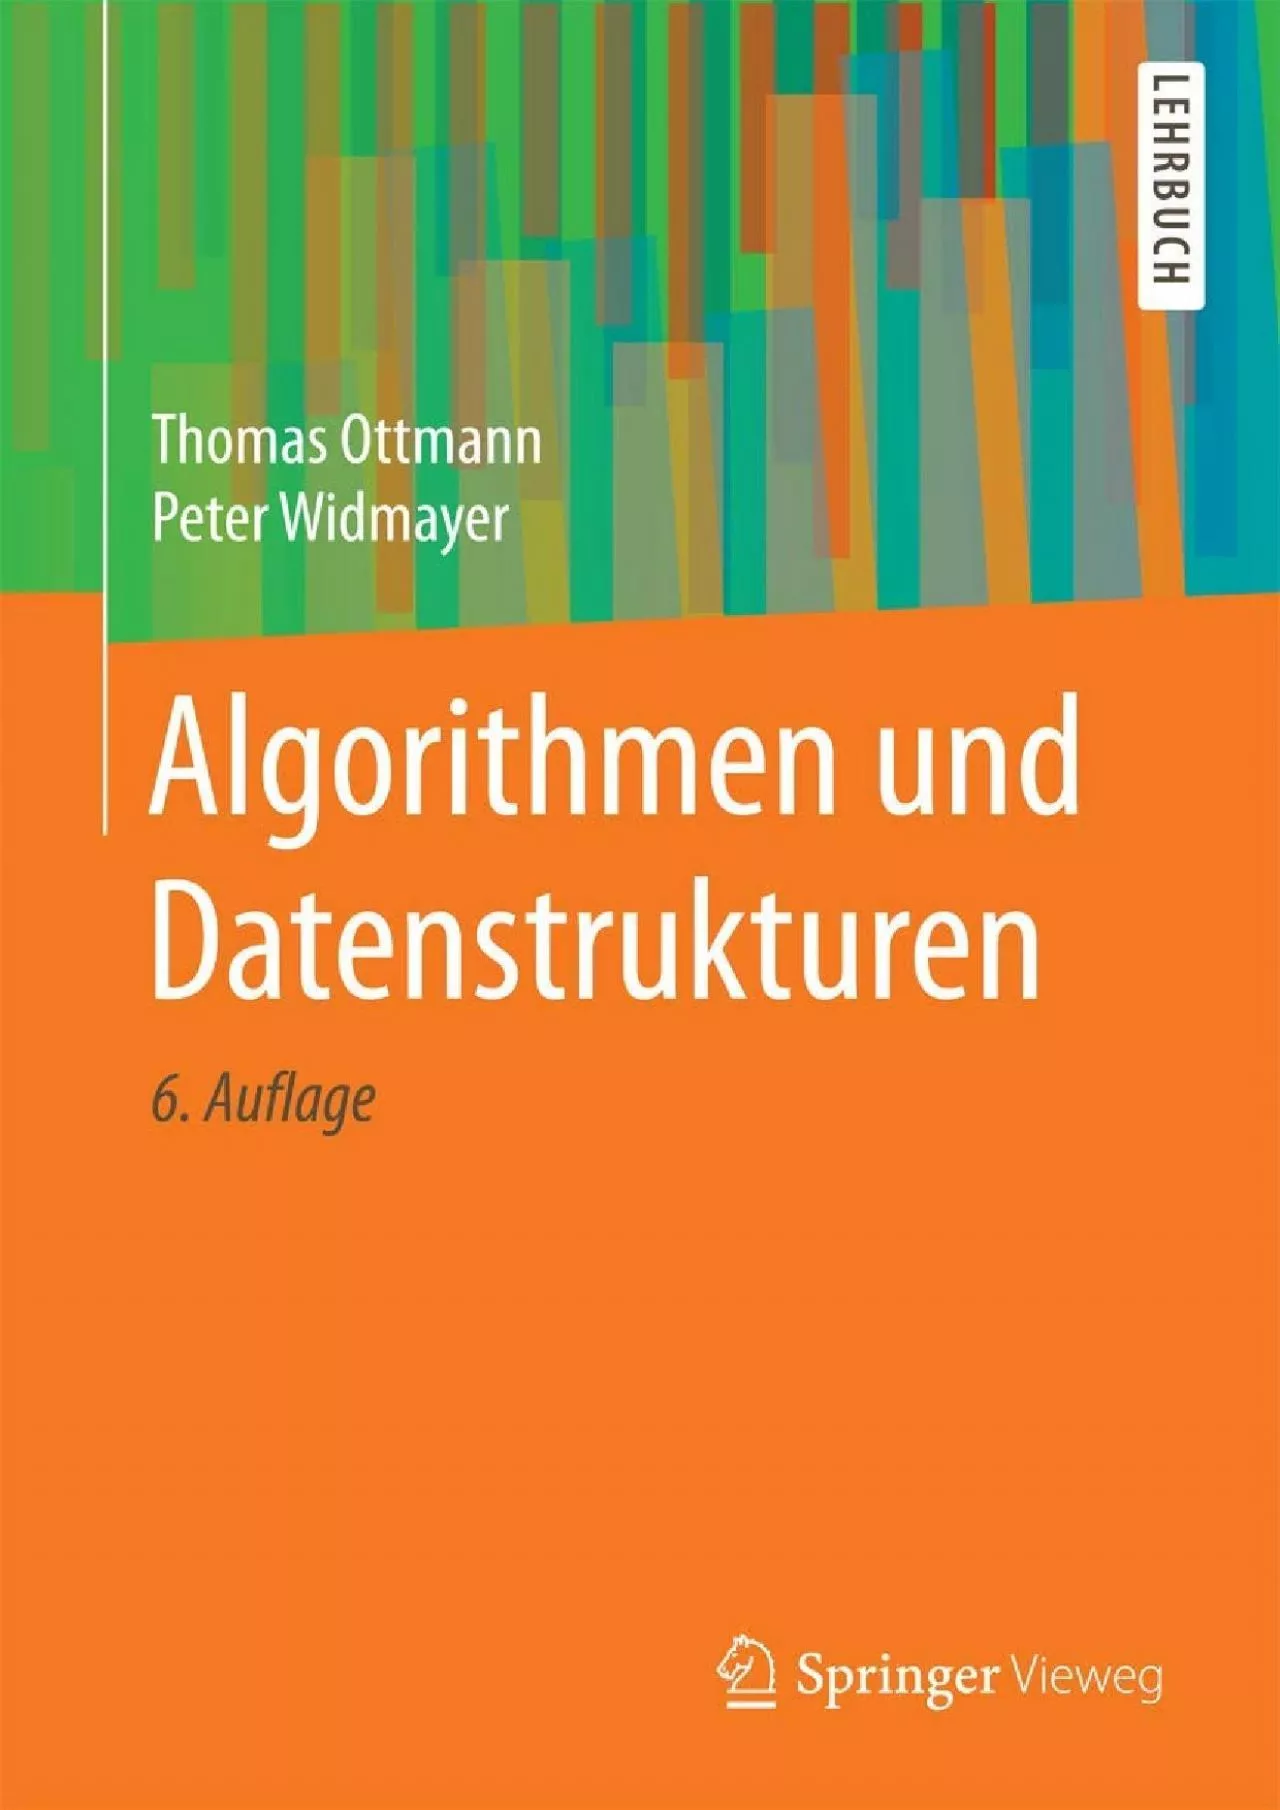 [PDF]-Algorithmen und Datenstrukturen (German Edition)